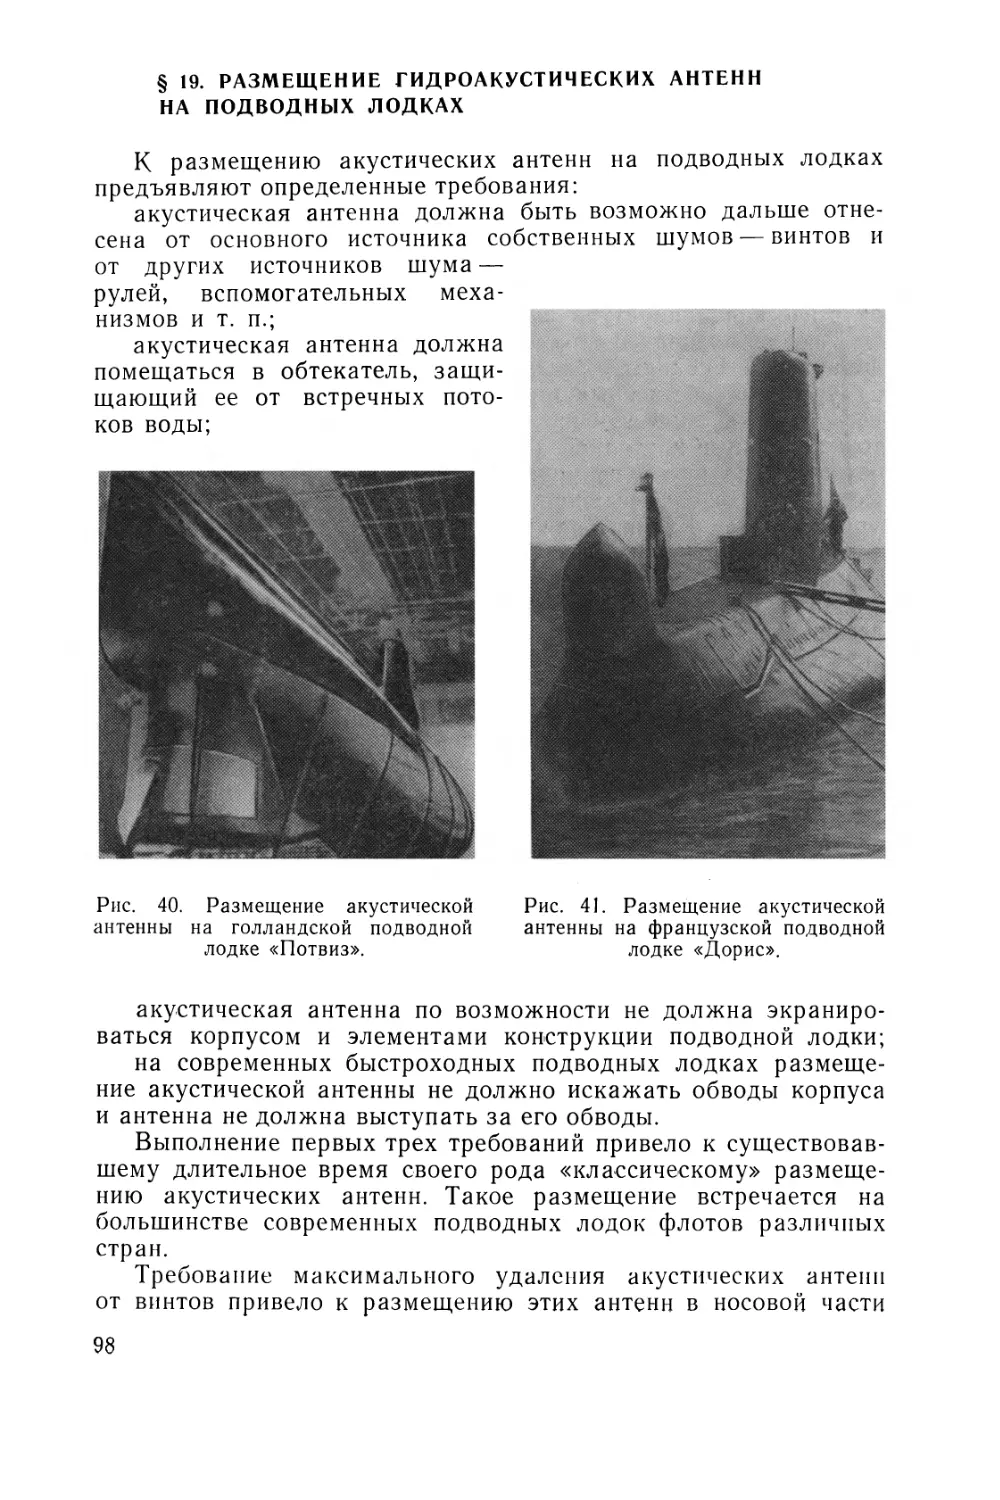 § 19. Размещение гидроакустических антенн на подводных лодках